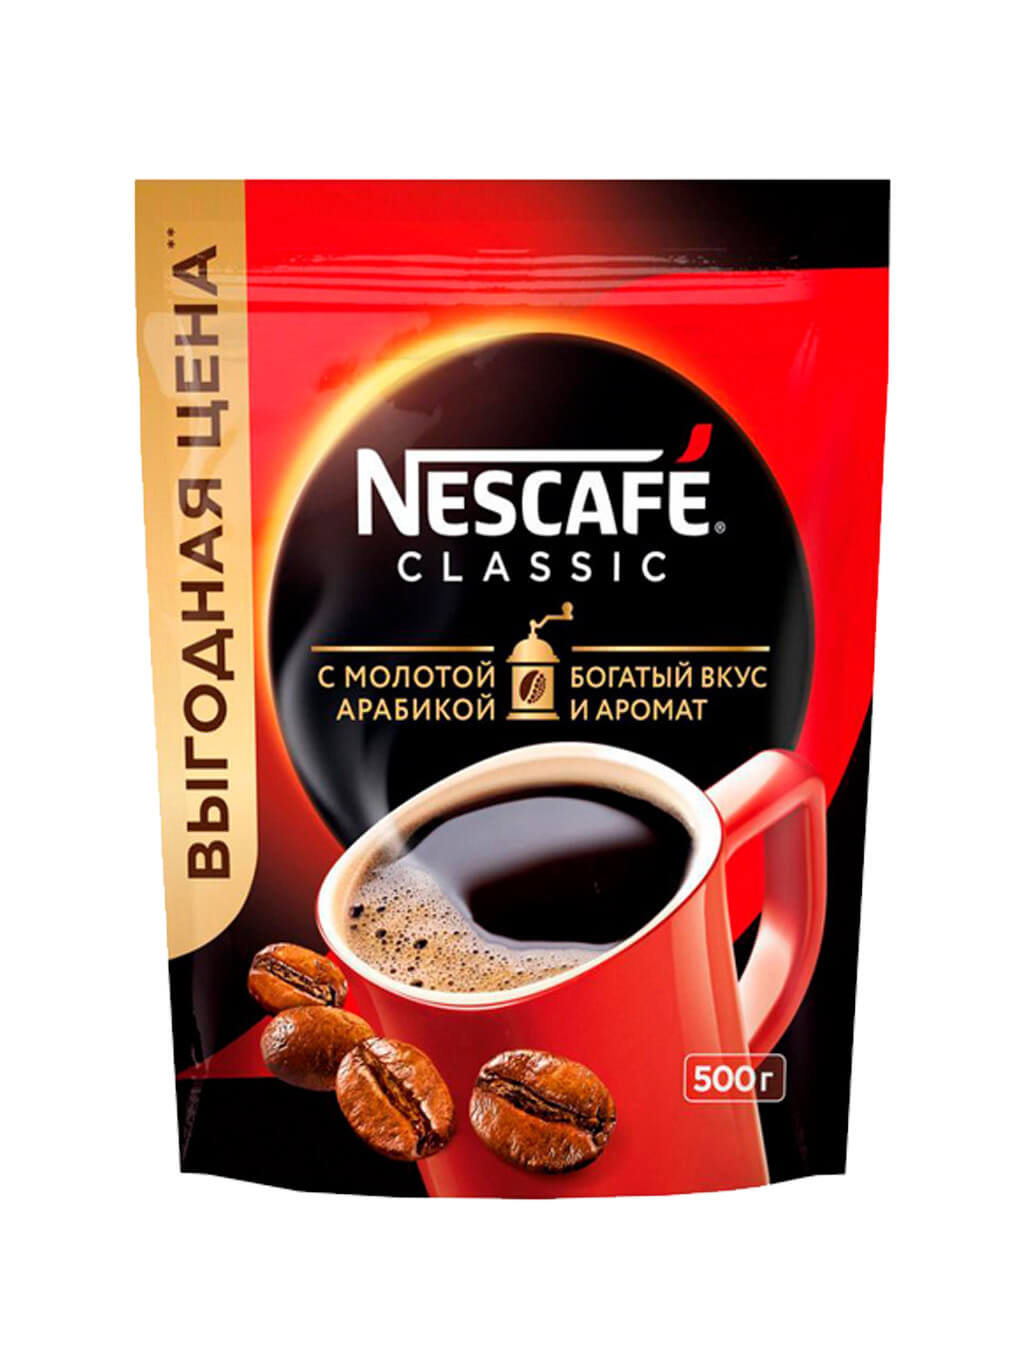 Кофе нескафе классик 500 гр. Нескафе Классик 500 грамм мягкая упаковка. Кофе Nescafe мягкая упаковка 500г. Кофе Nescafe Gold пакет 500 гр. Nescafe Classic Dark Roast кофе натуральный растворимый 85g.